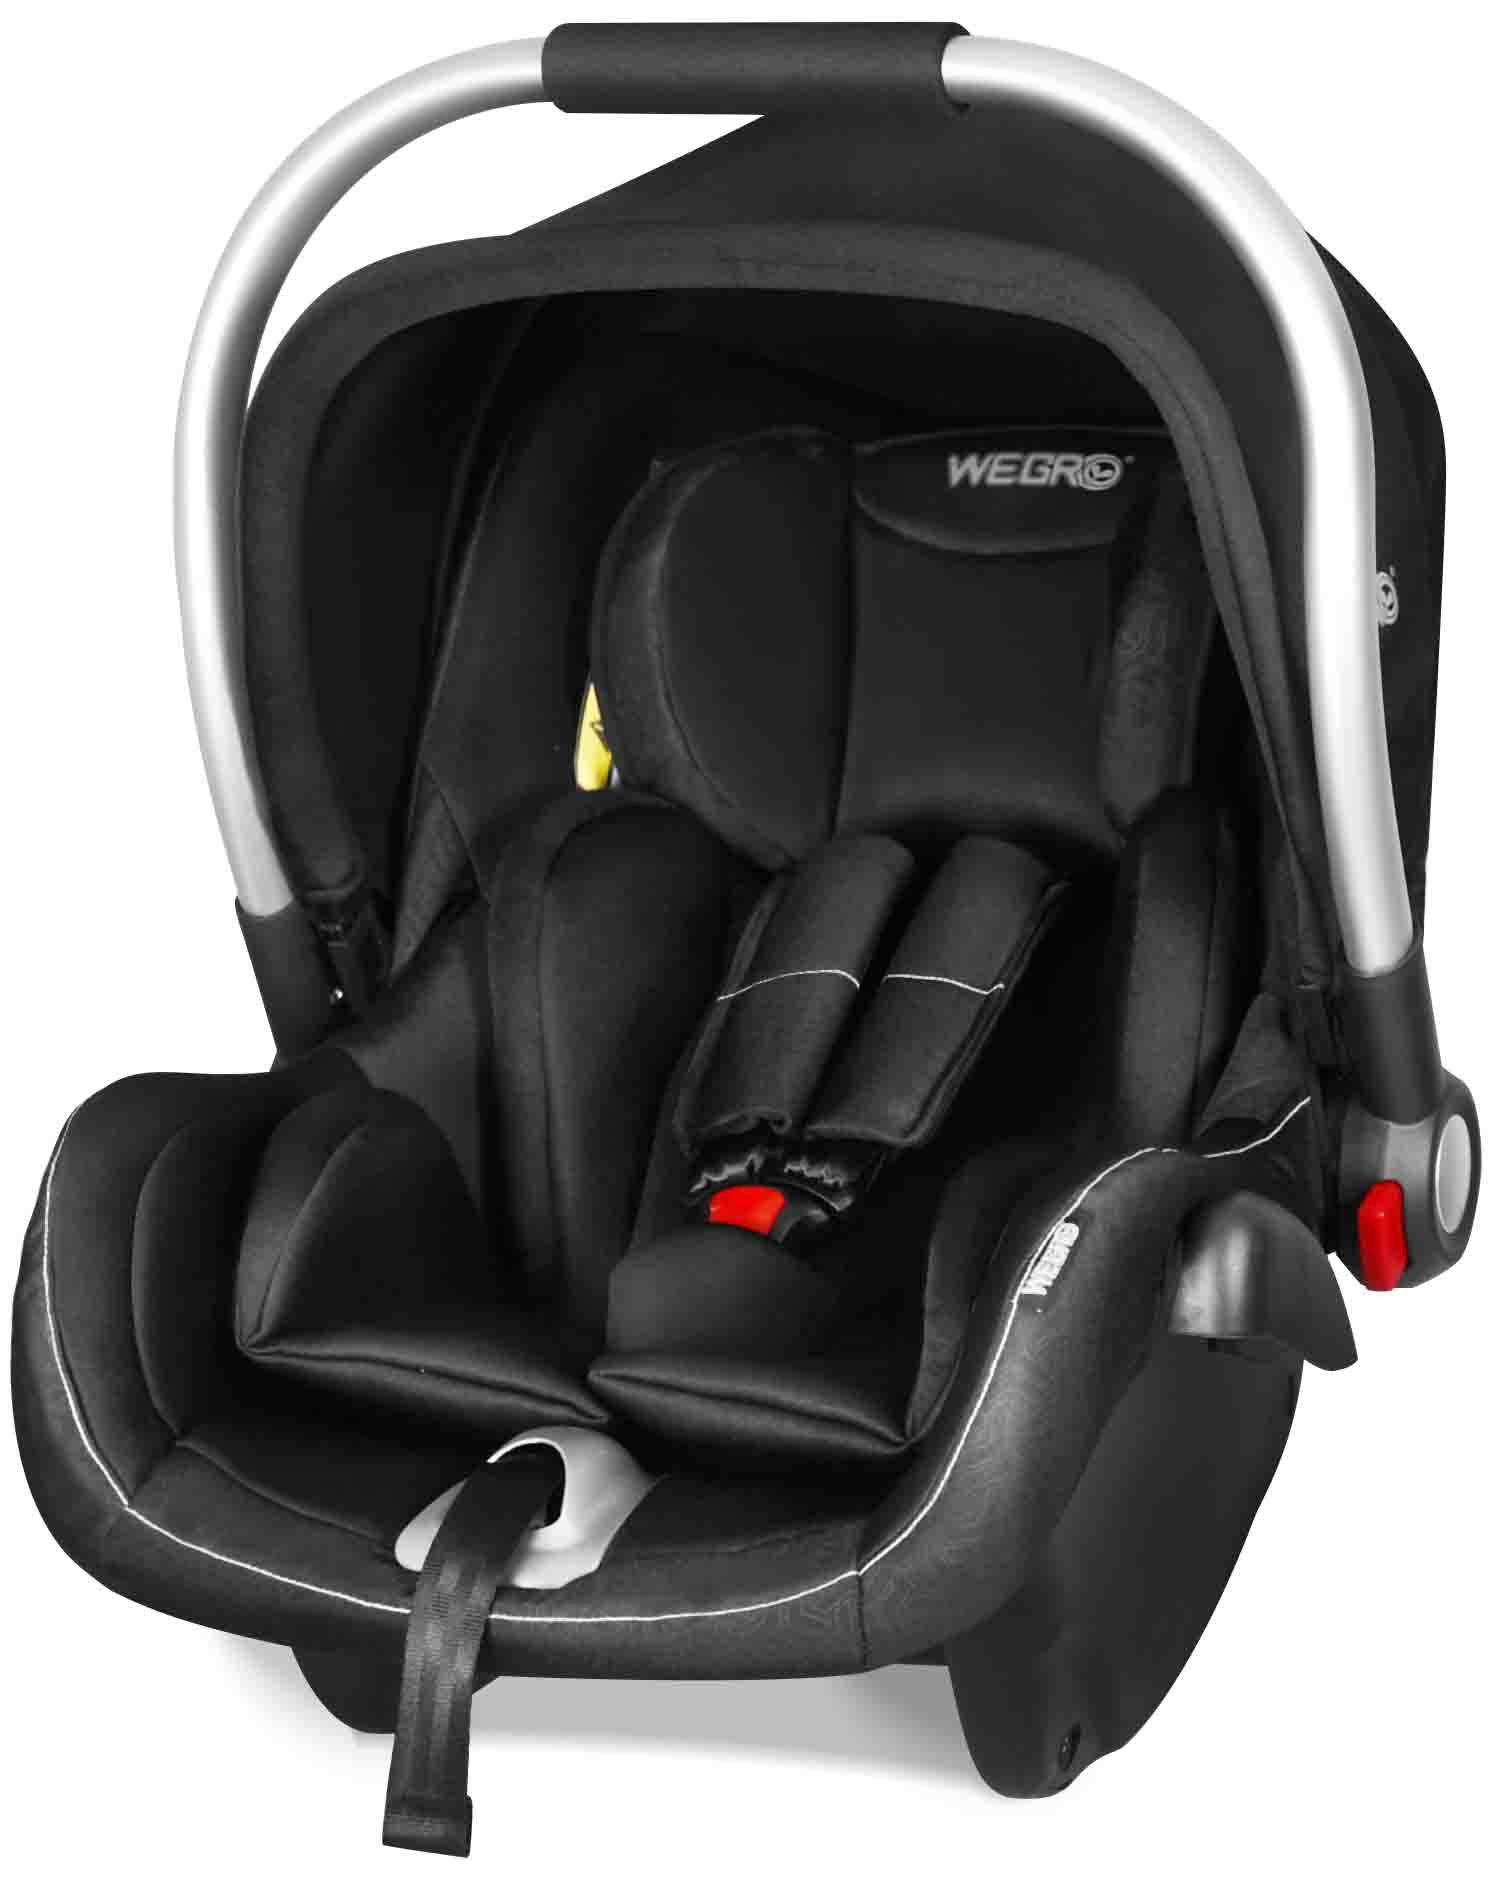 We04 Joyous Infant Car Seats/Baby Carrier/Infant Car Seats Gr0+